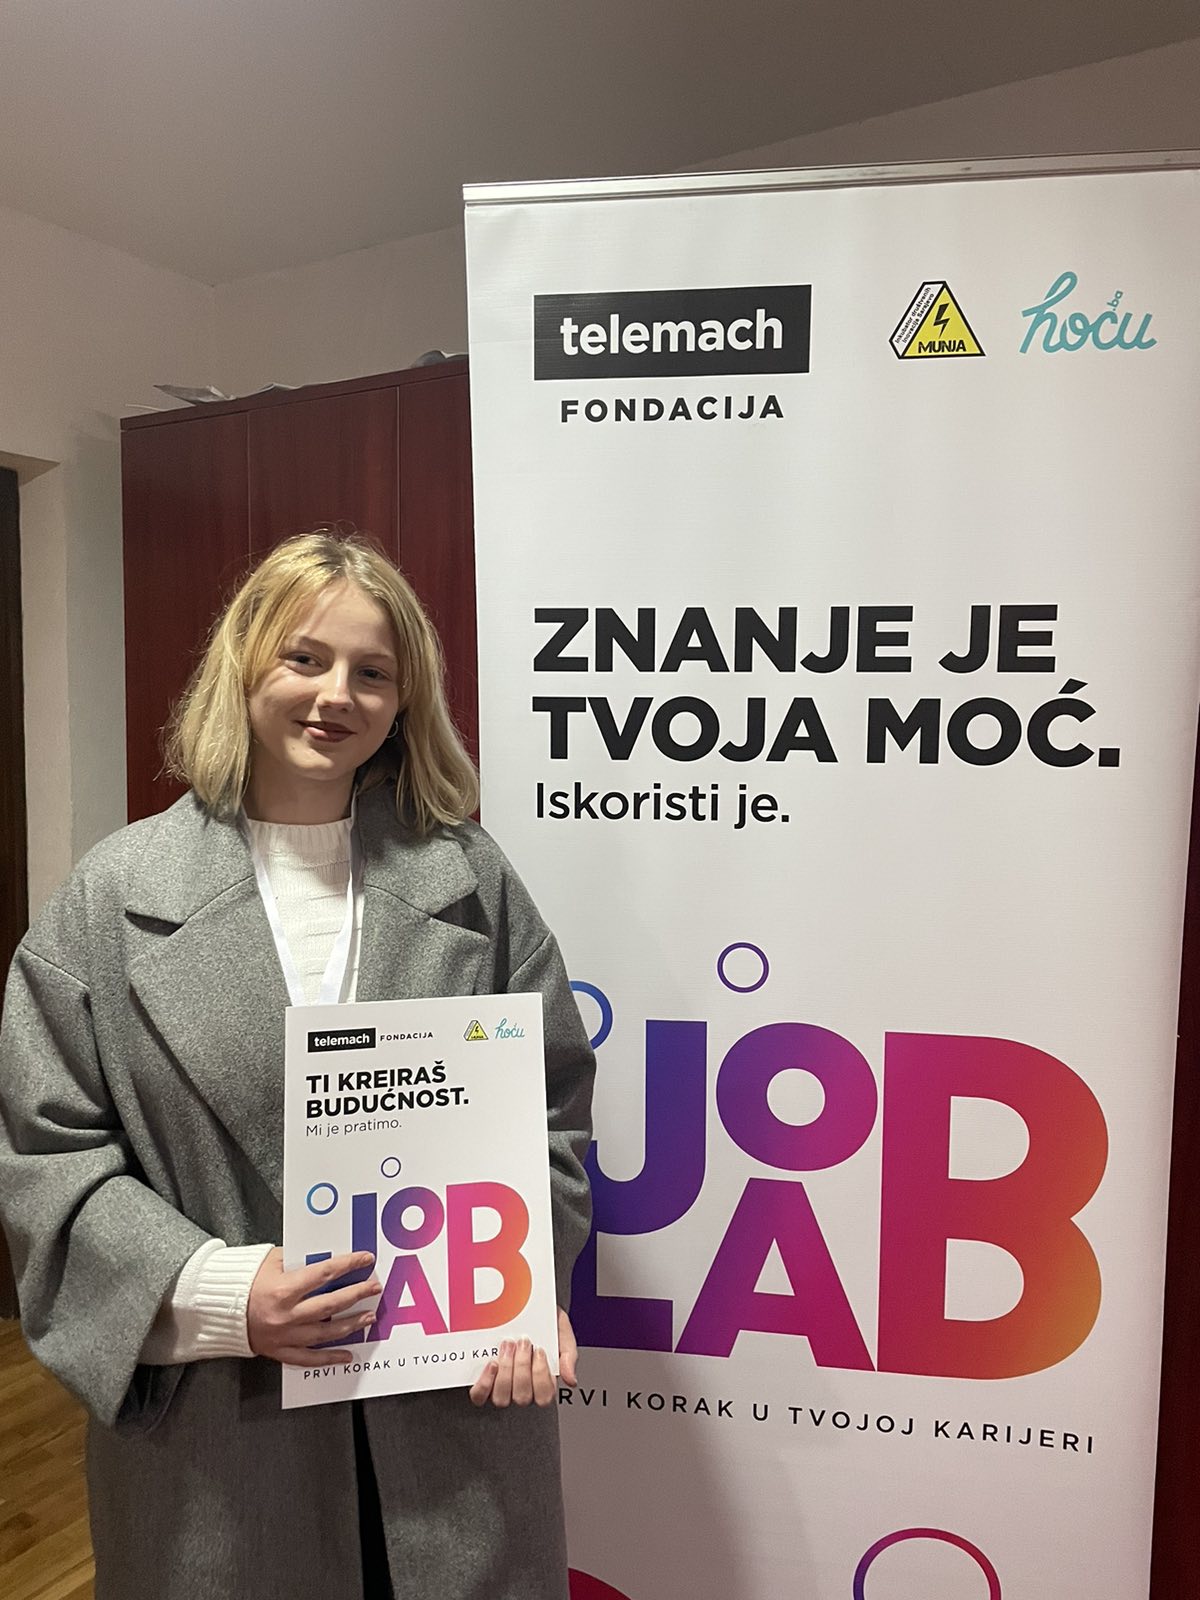 job lab radionica telemach fondacije održana u livnu – nova znanja i vještine za srednjoškolce